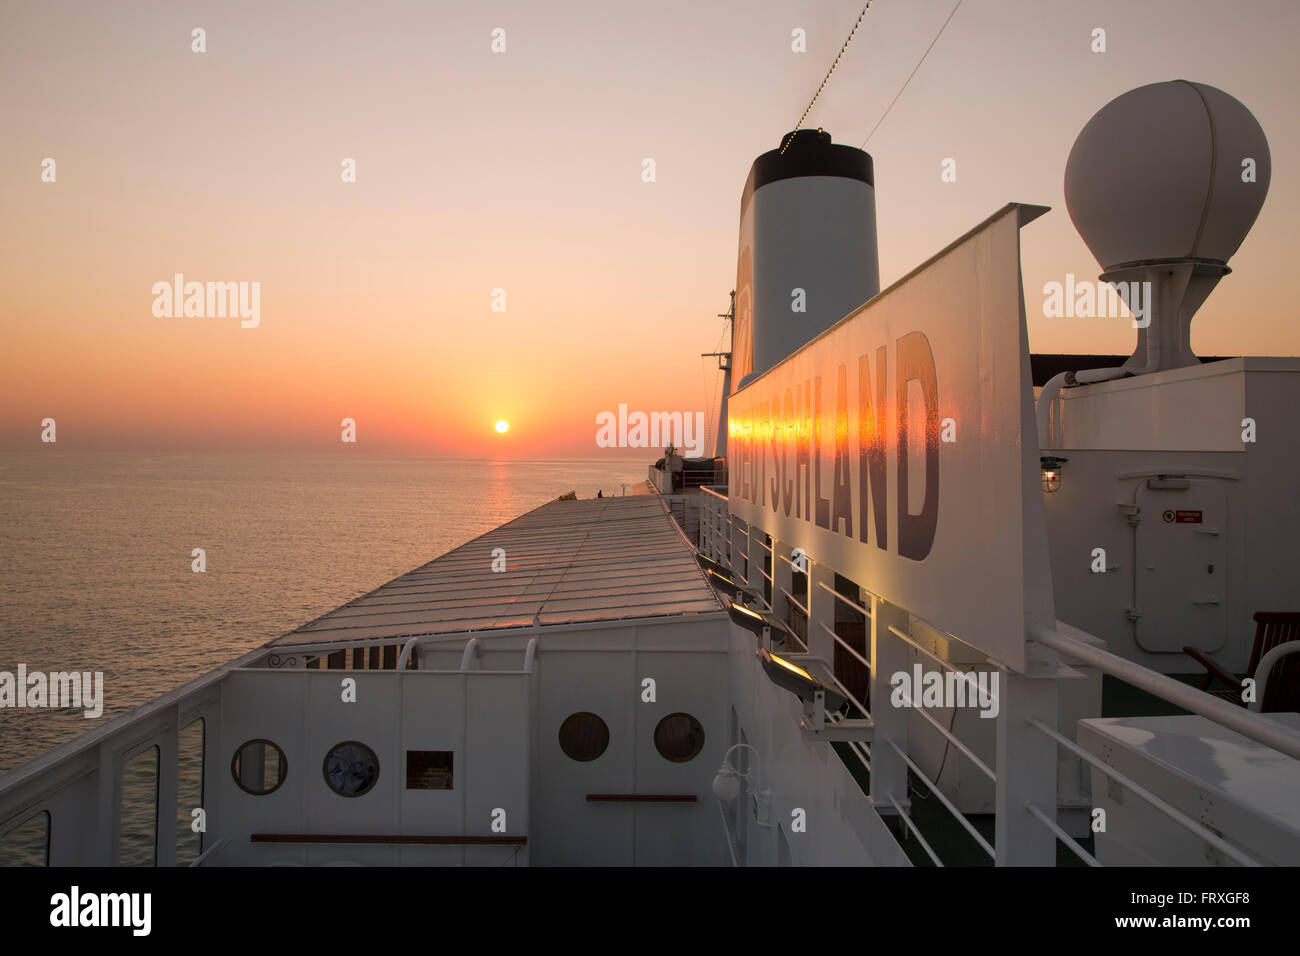 Cruise ship MS Deutschland at sunset, Reederei Peter Deilmann, Arabian Sea, near India Stock Photo